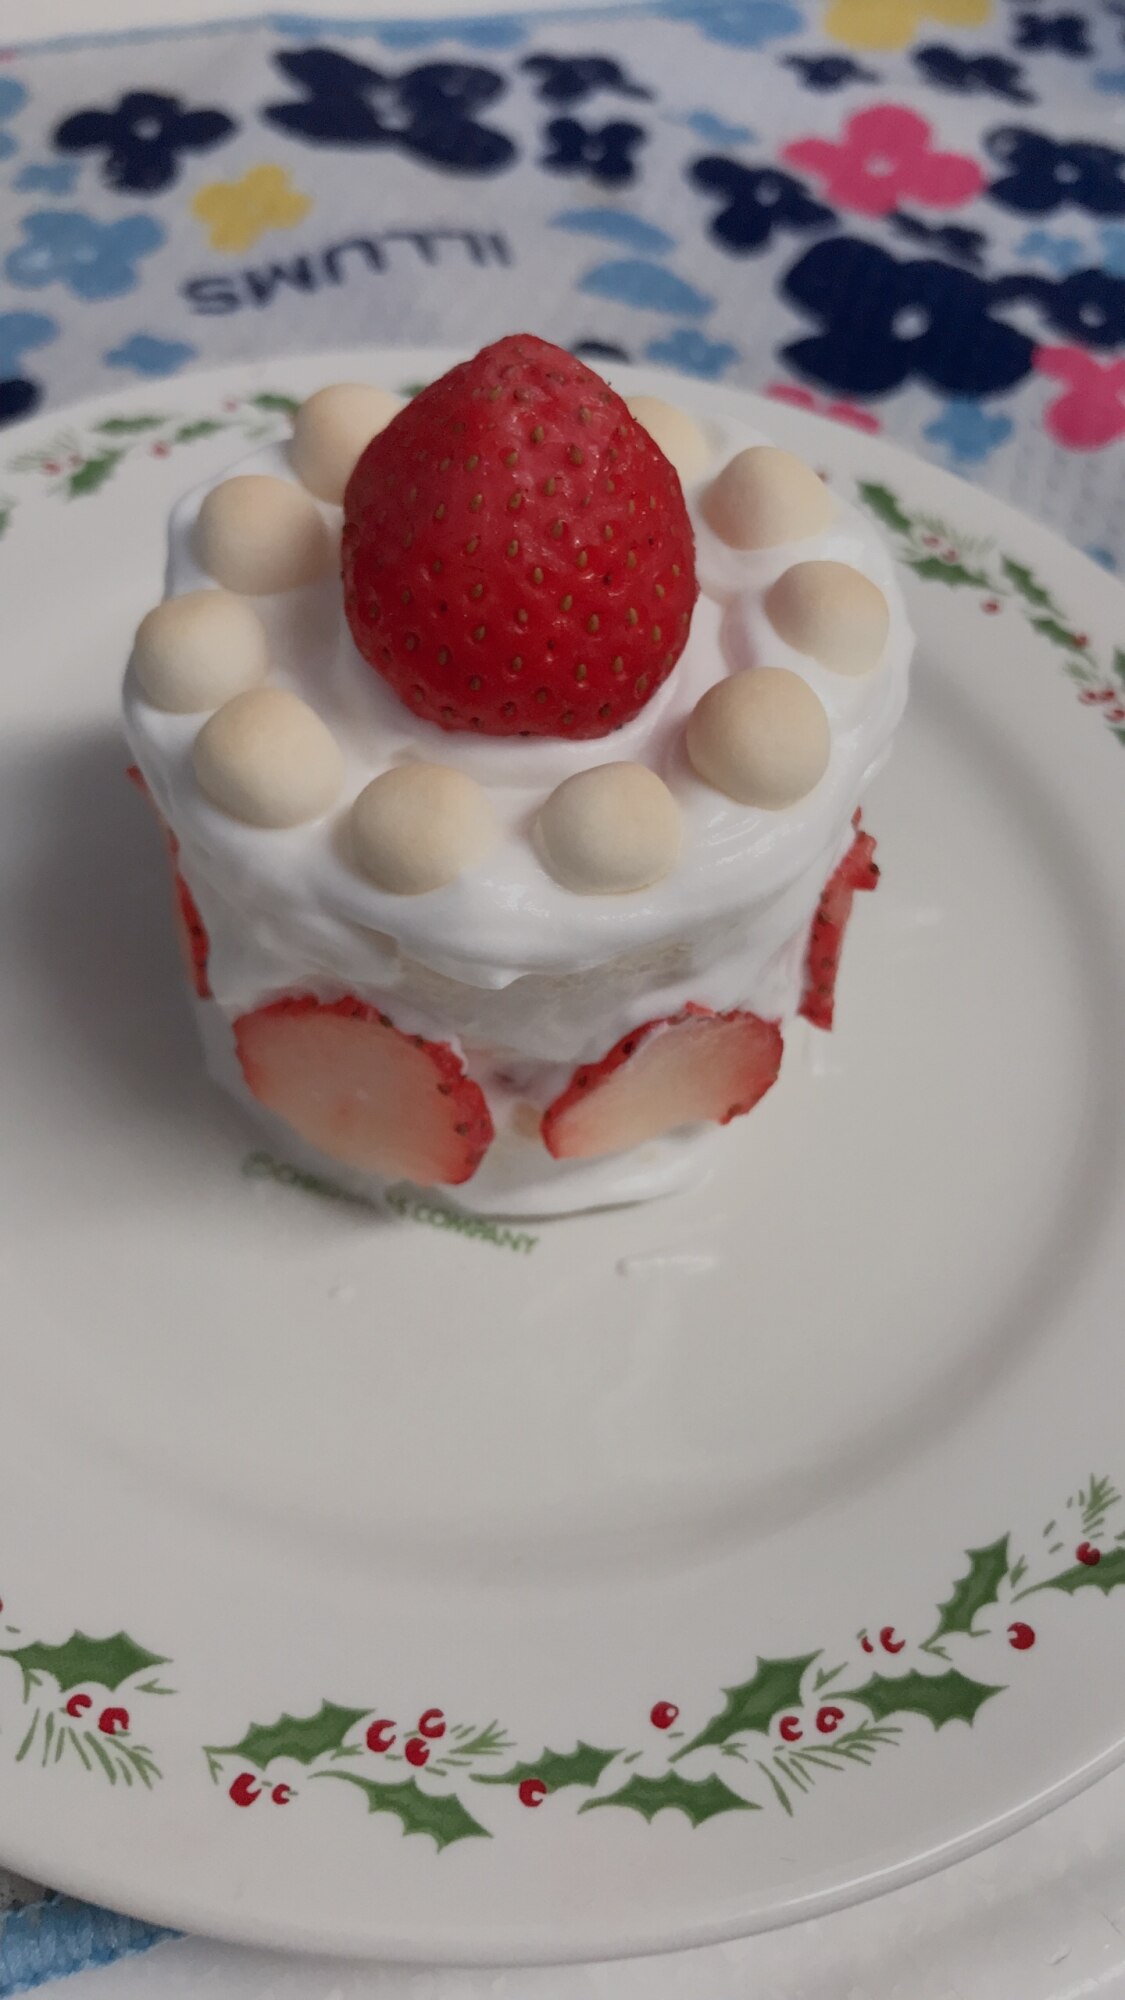 全部食べれる 一歳のお誕生日ケーキ レシピ 作り方 By Rママ 楽天レシピ